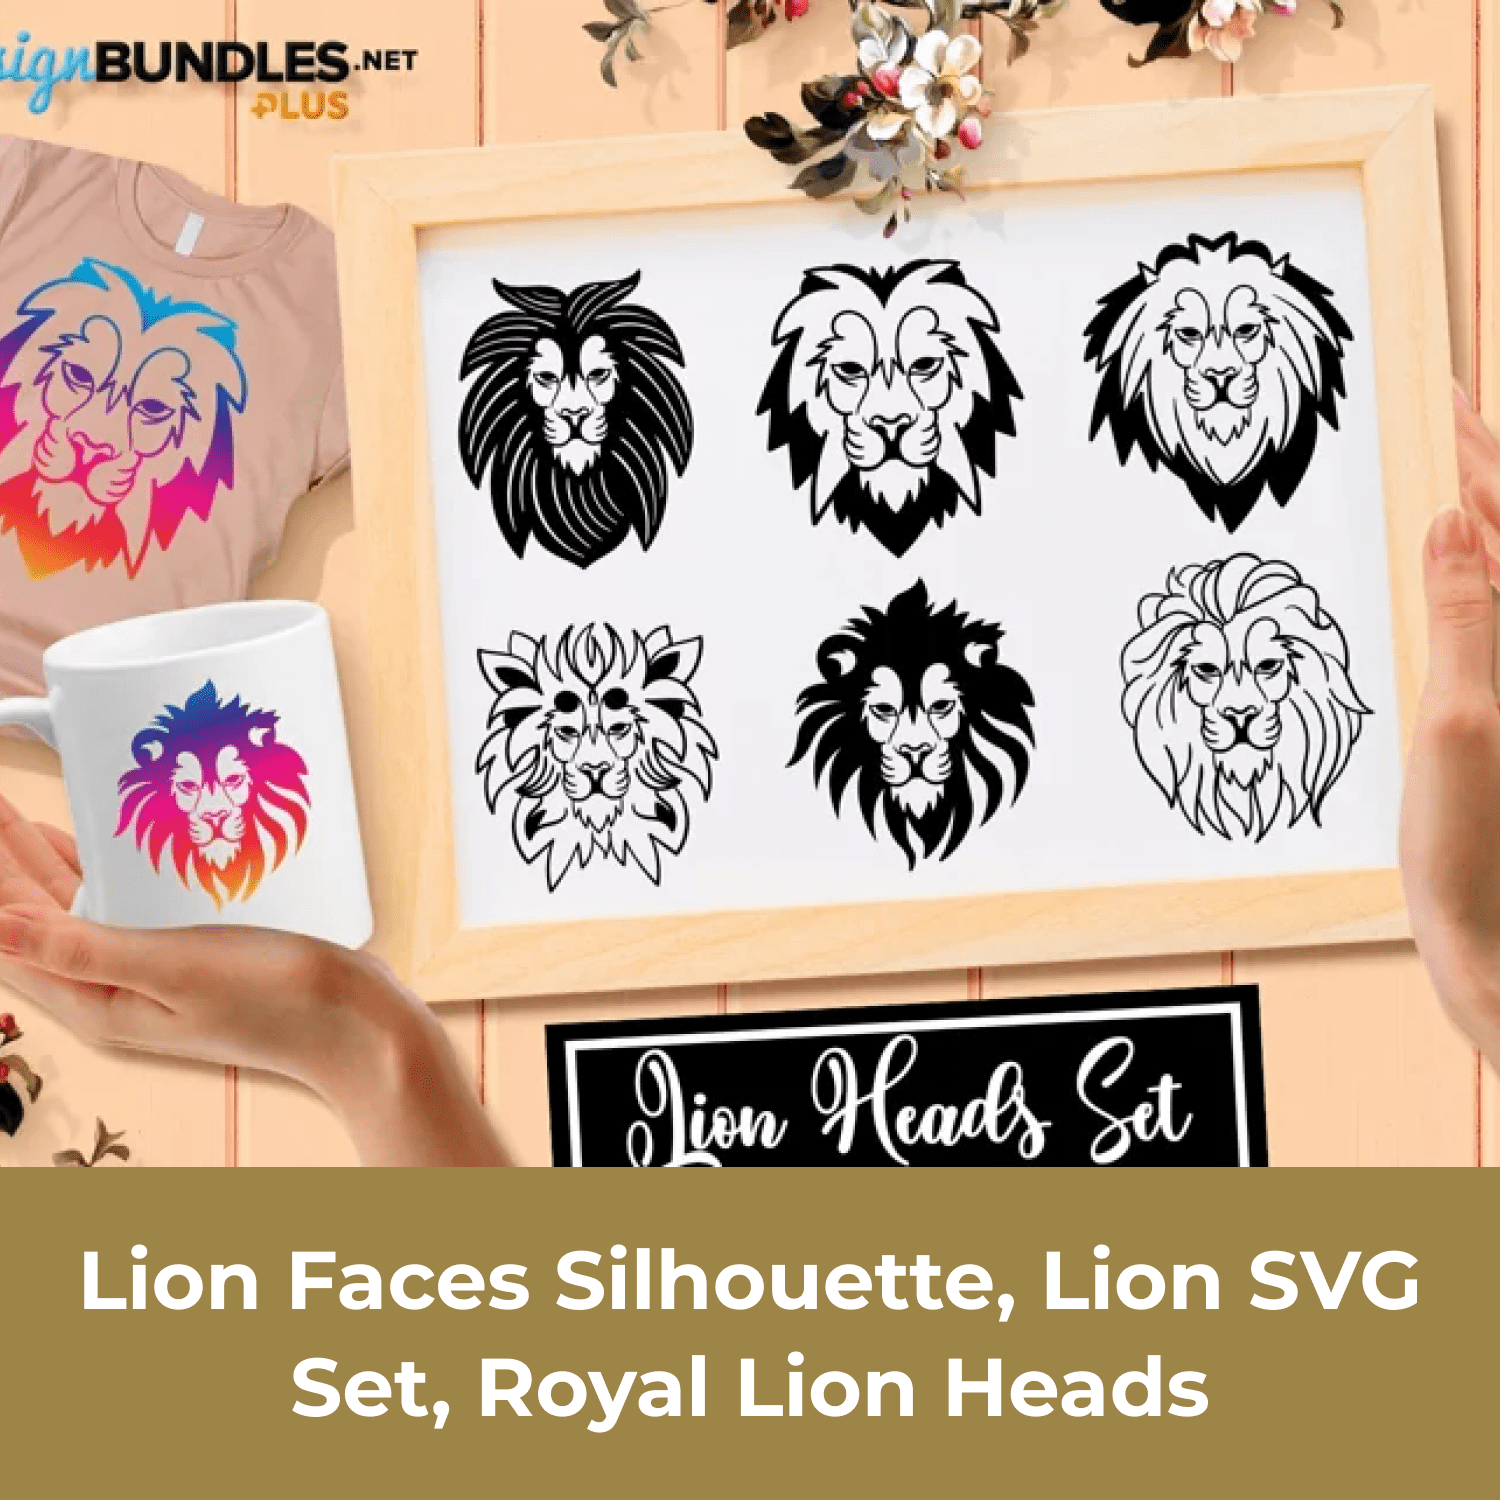 Lion faces silhouettes.